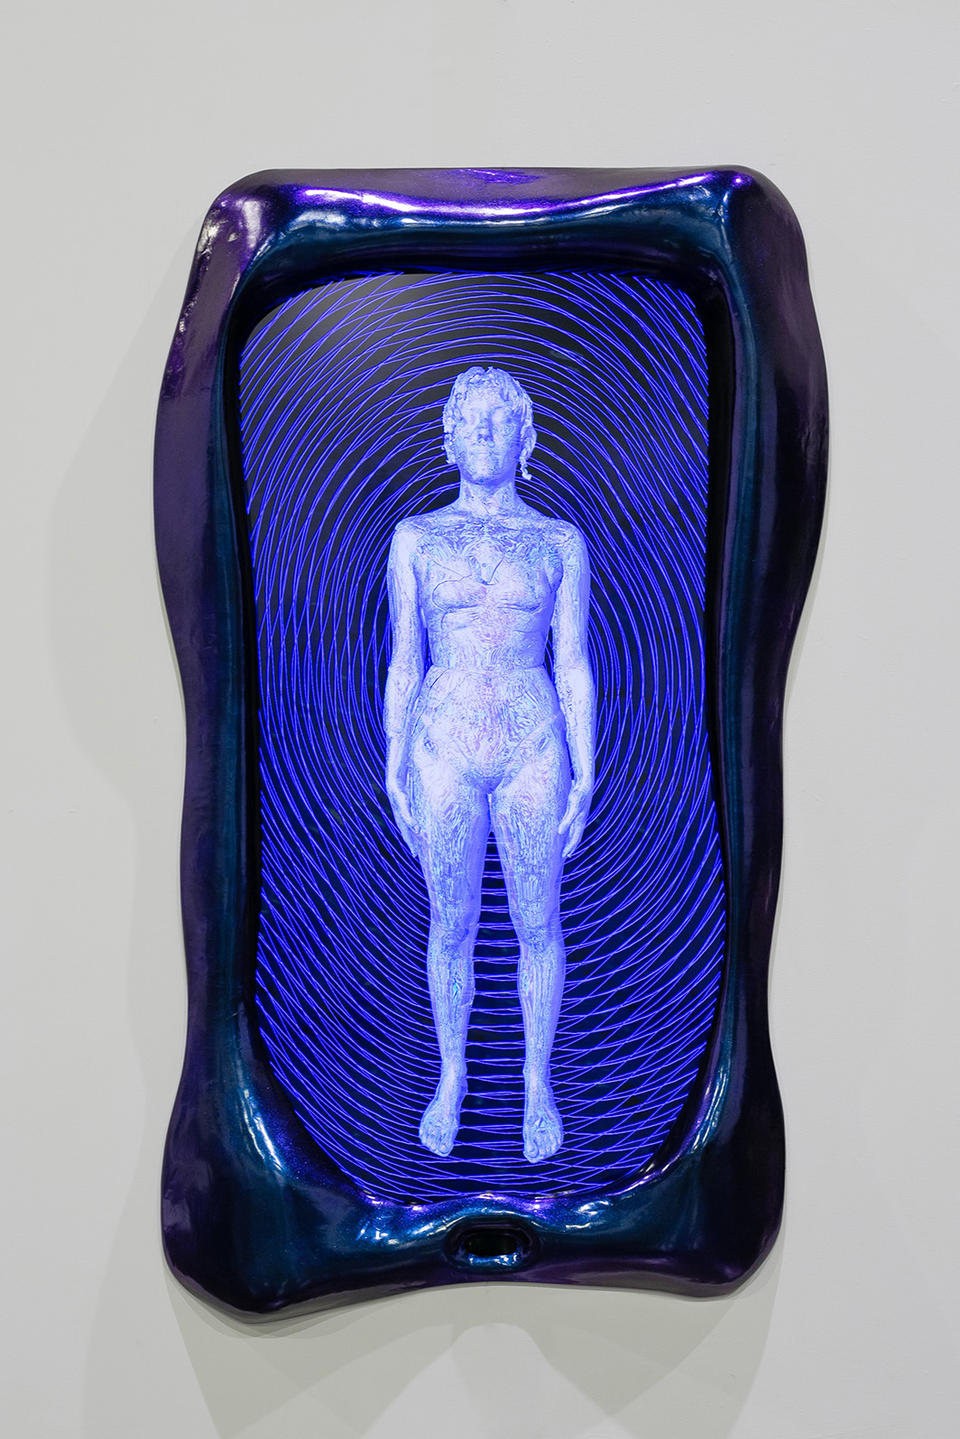 A blue and purple frame surrounds a screen showing a cyborg like figure